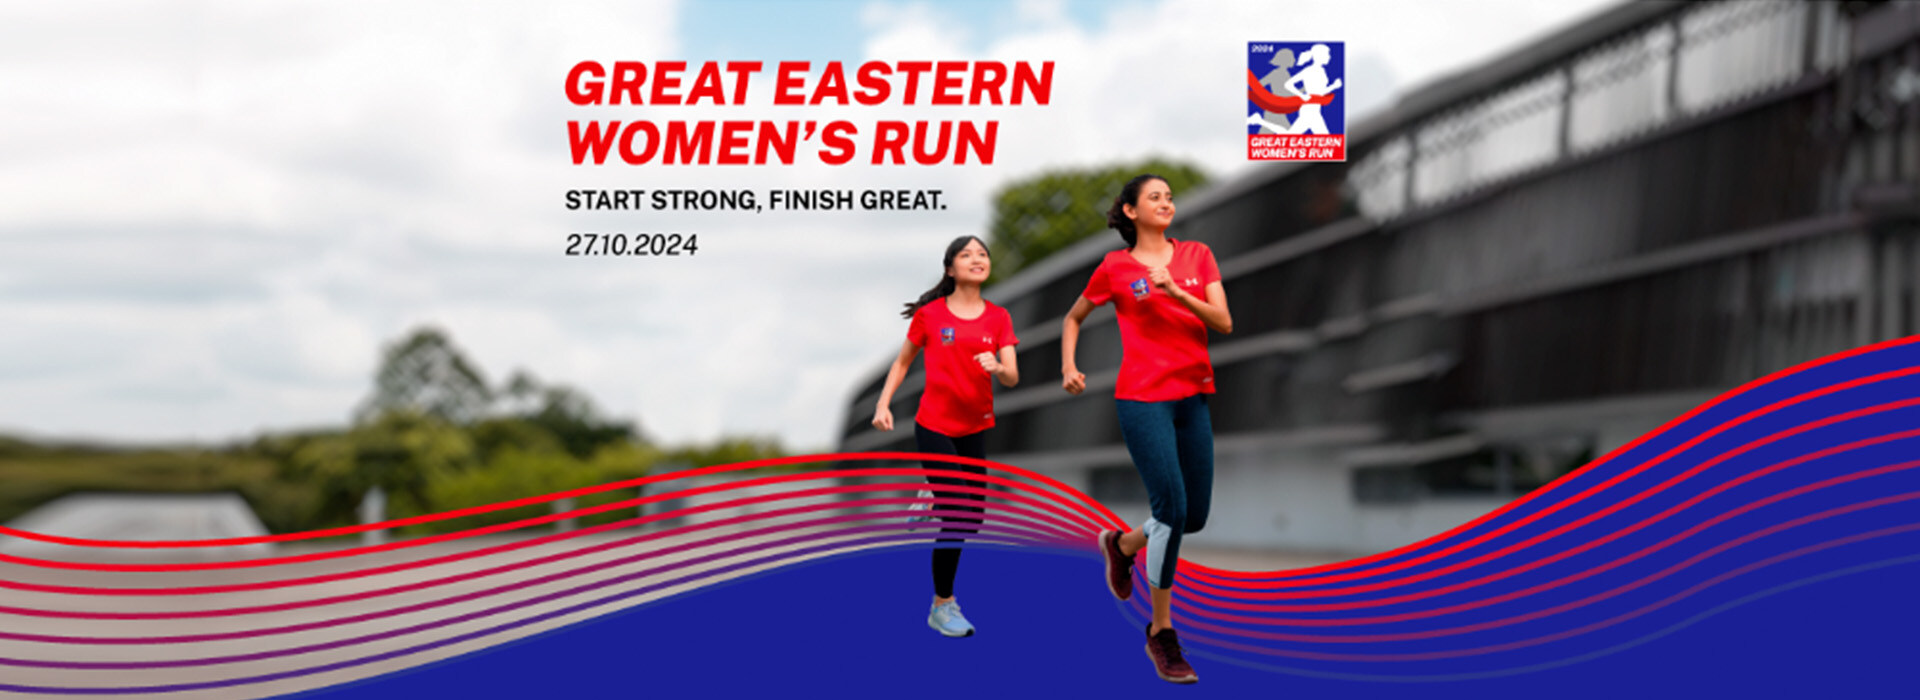 Great Eastern Women’s Run 2024